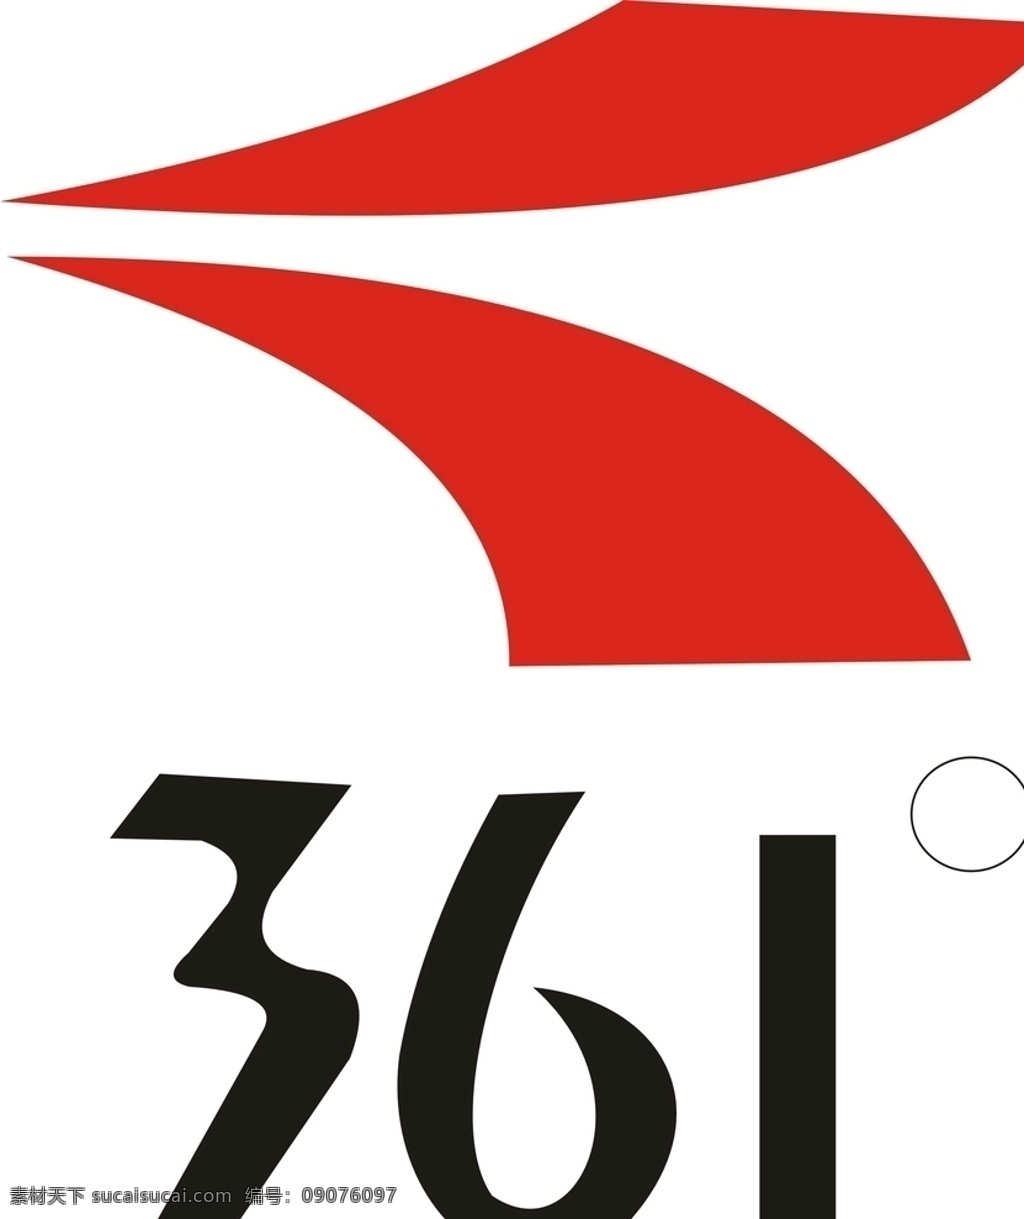 361 标志 矢量图 361logo 361标志 361标识 企业logo 标志图标 企业 logo